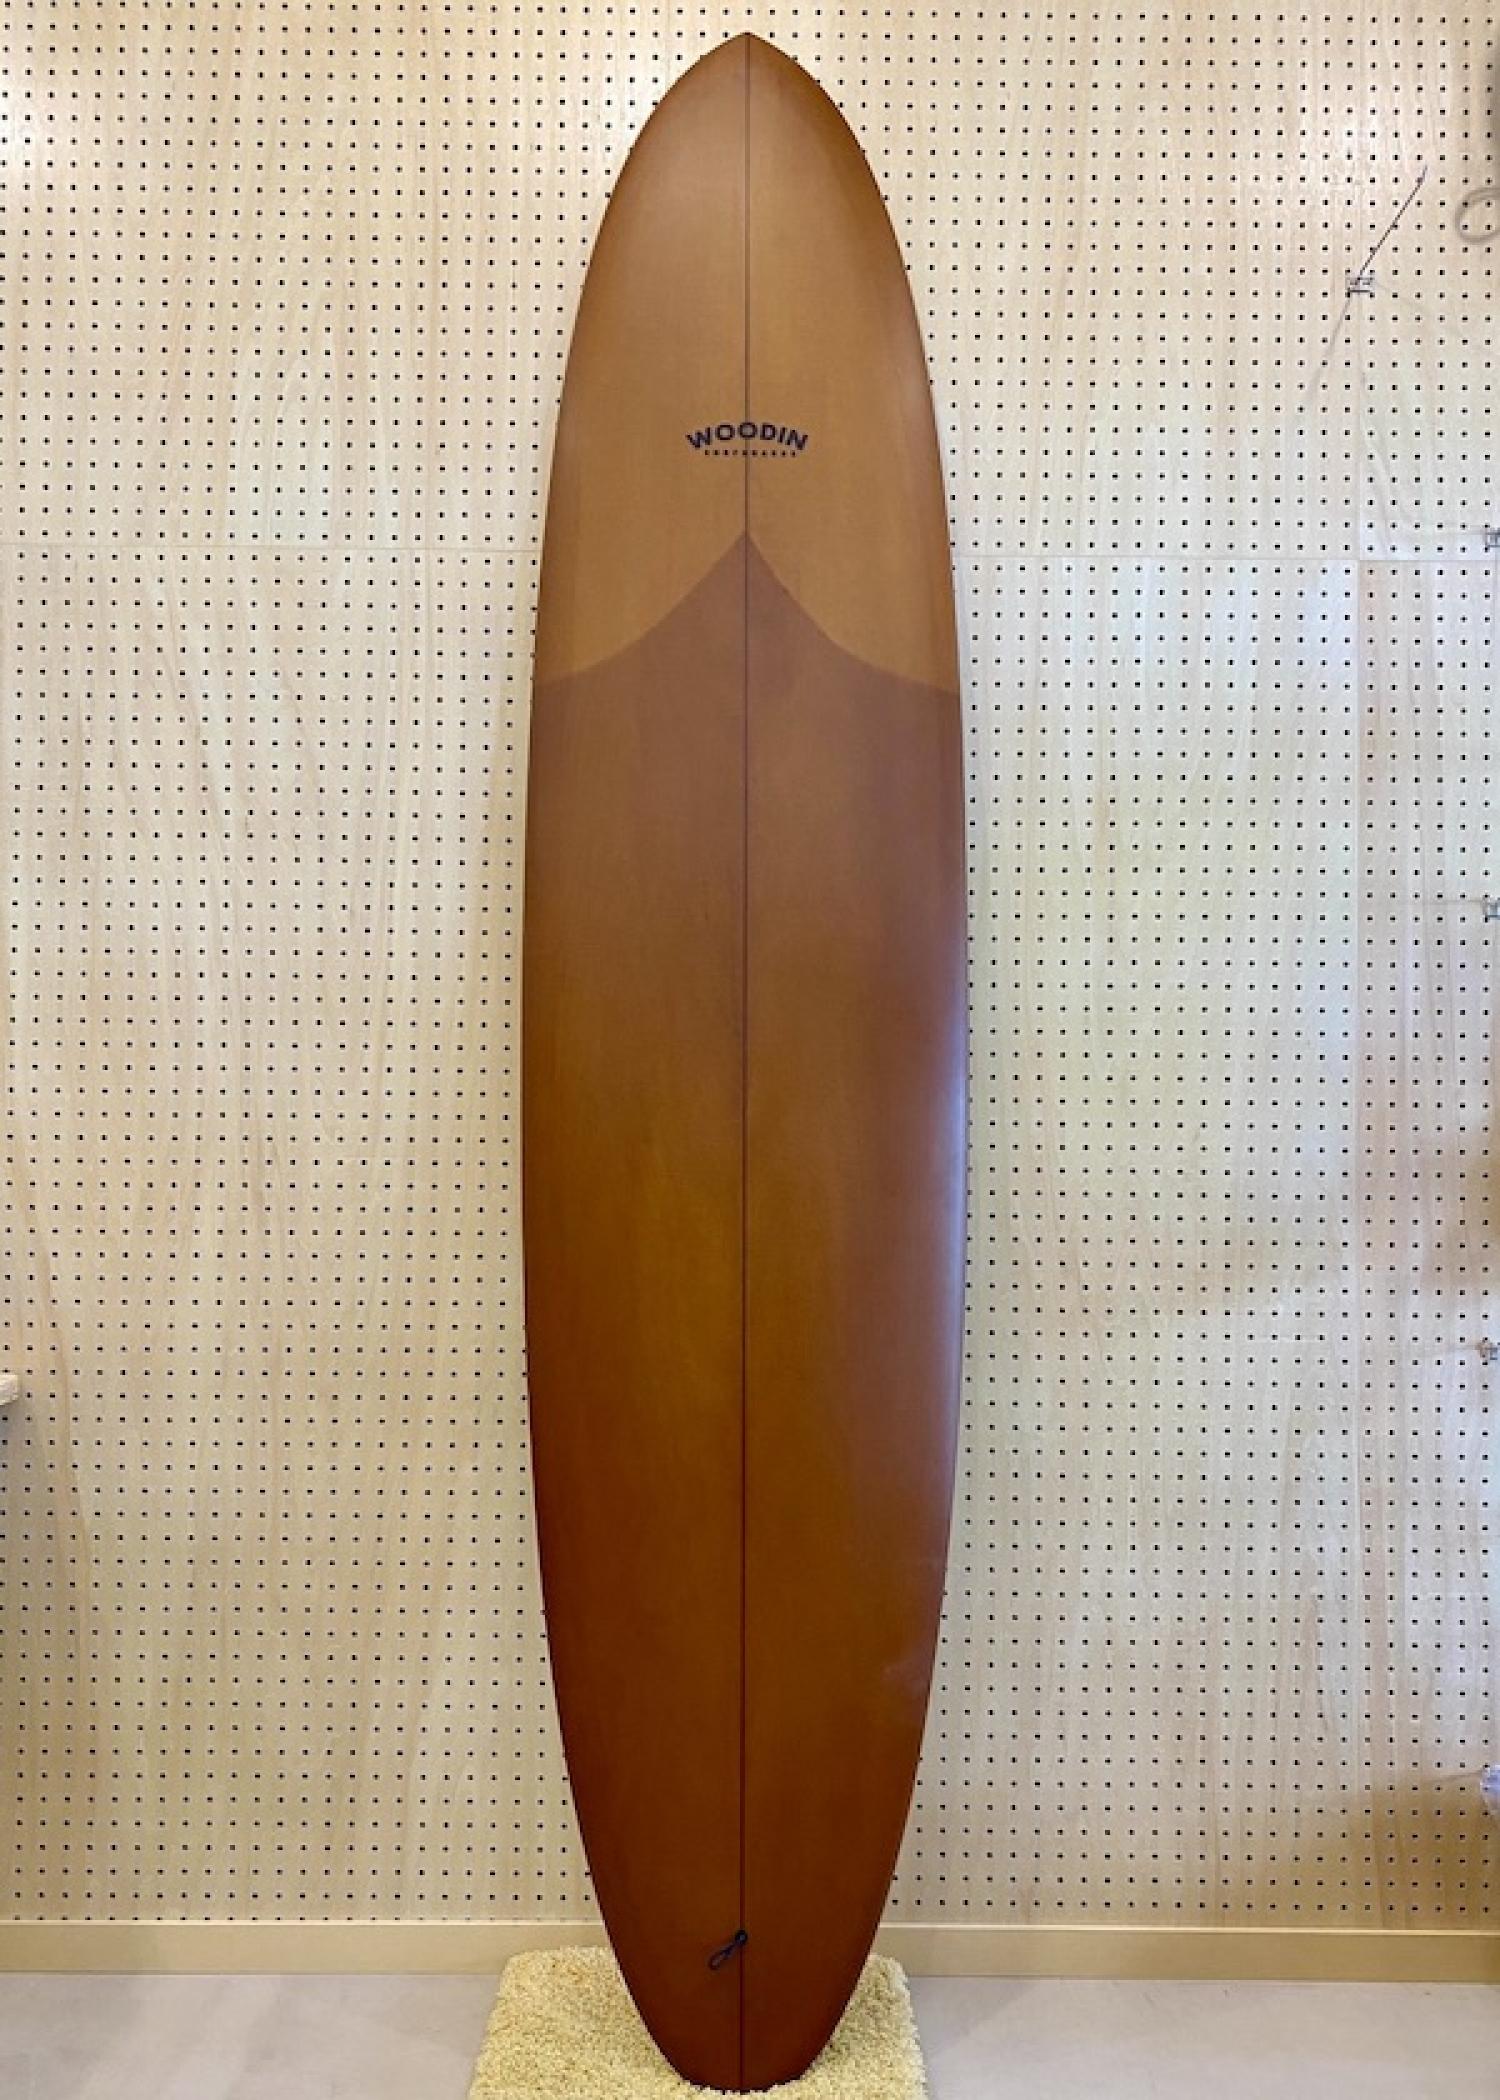 Gypsy Eye model 8.2 WOODIN SURFBOARDS